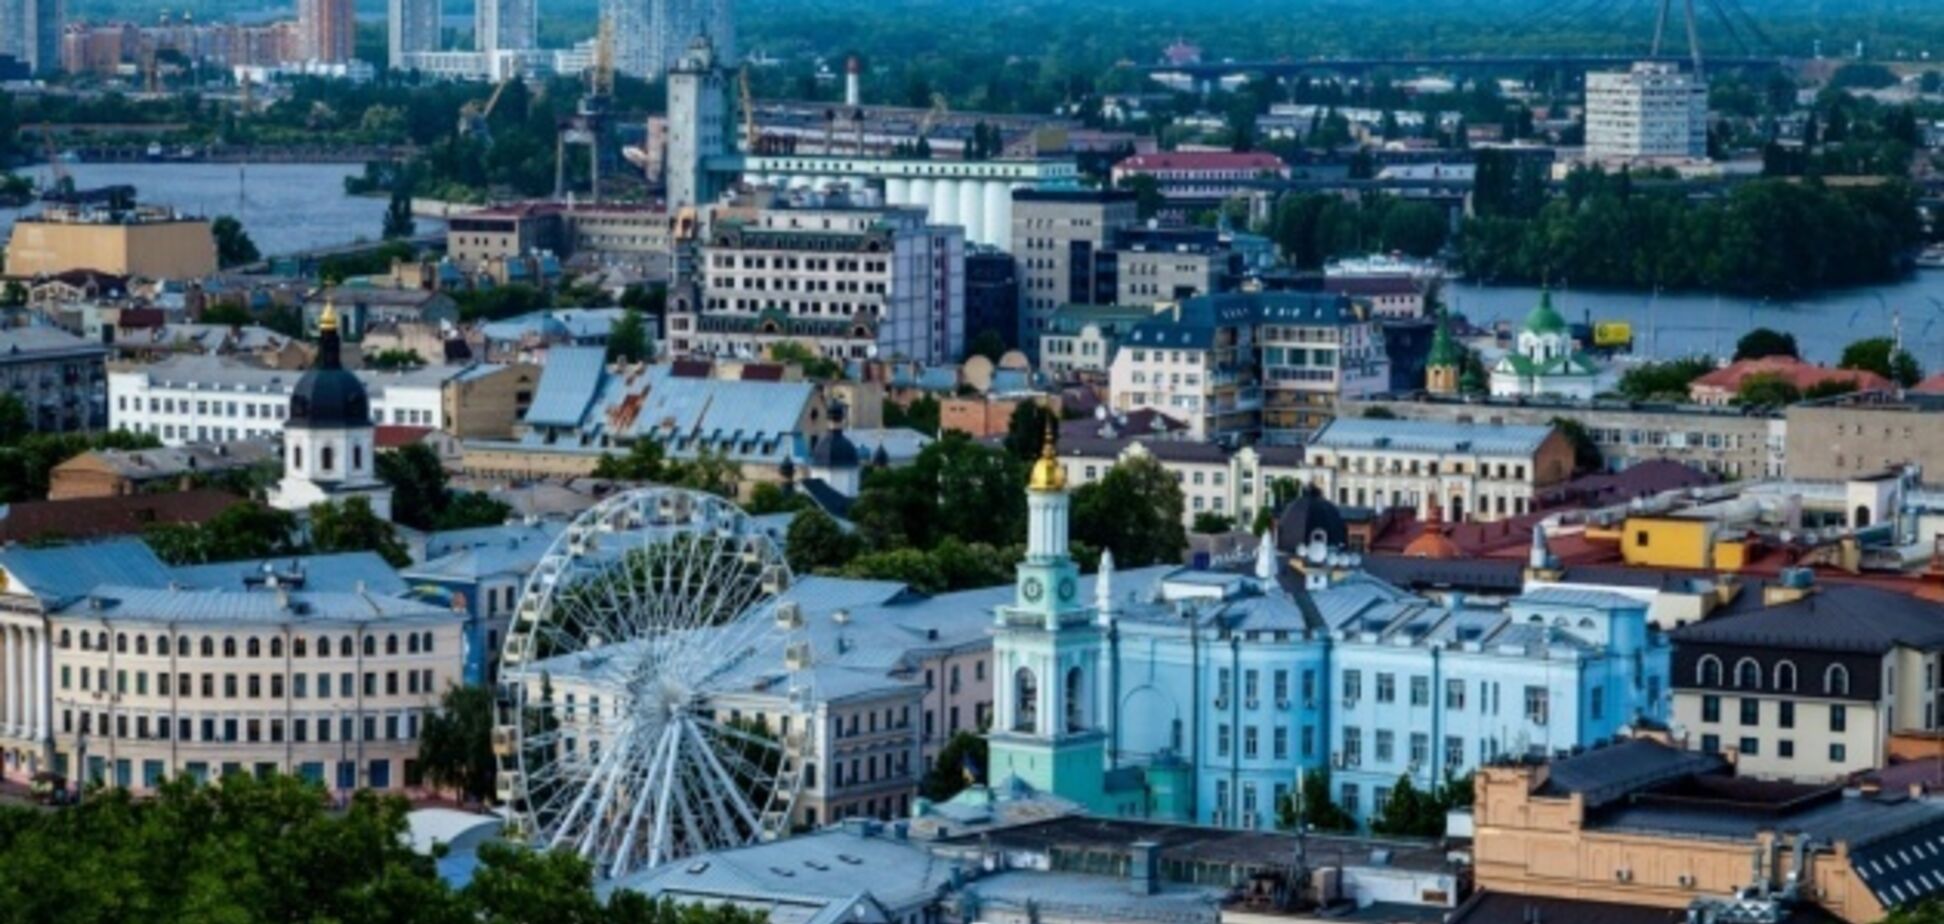 Составлен рейтинг самых дружелюбных городов: на каком месте Киев